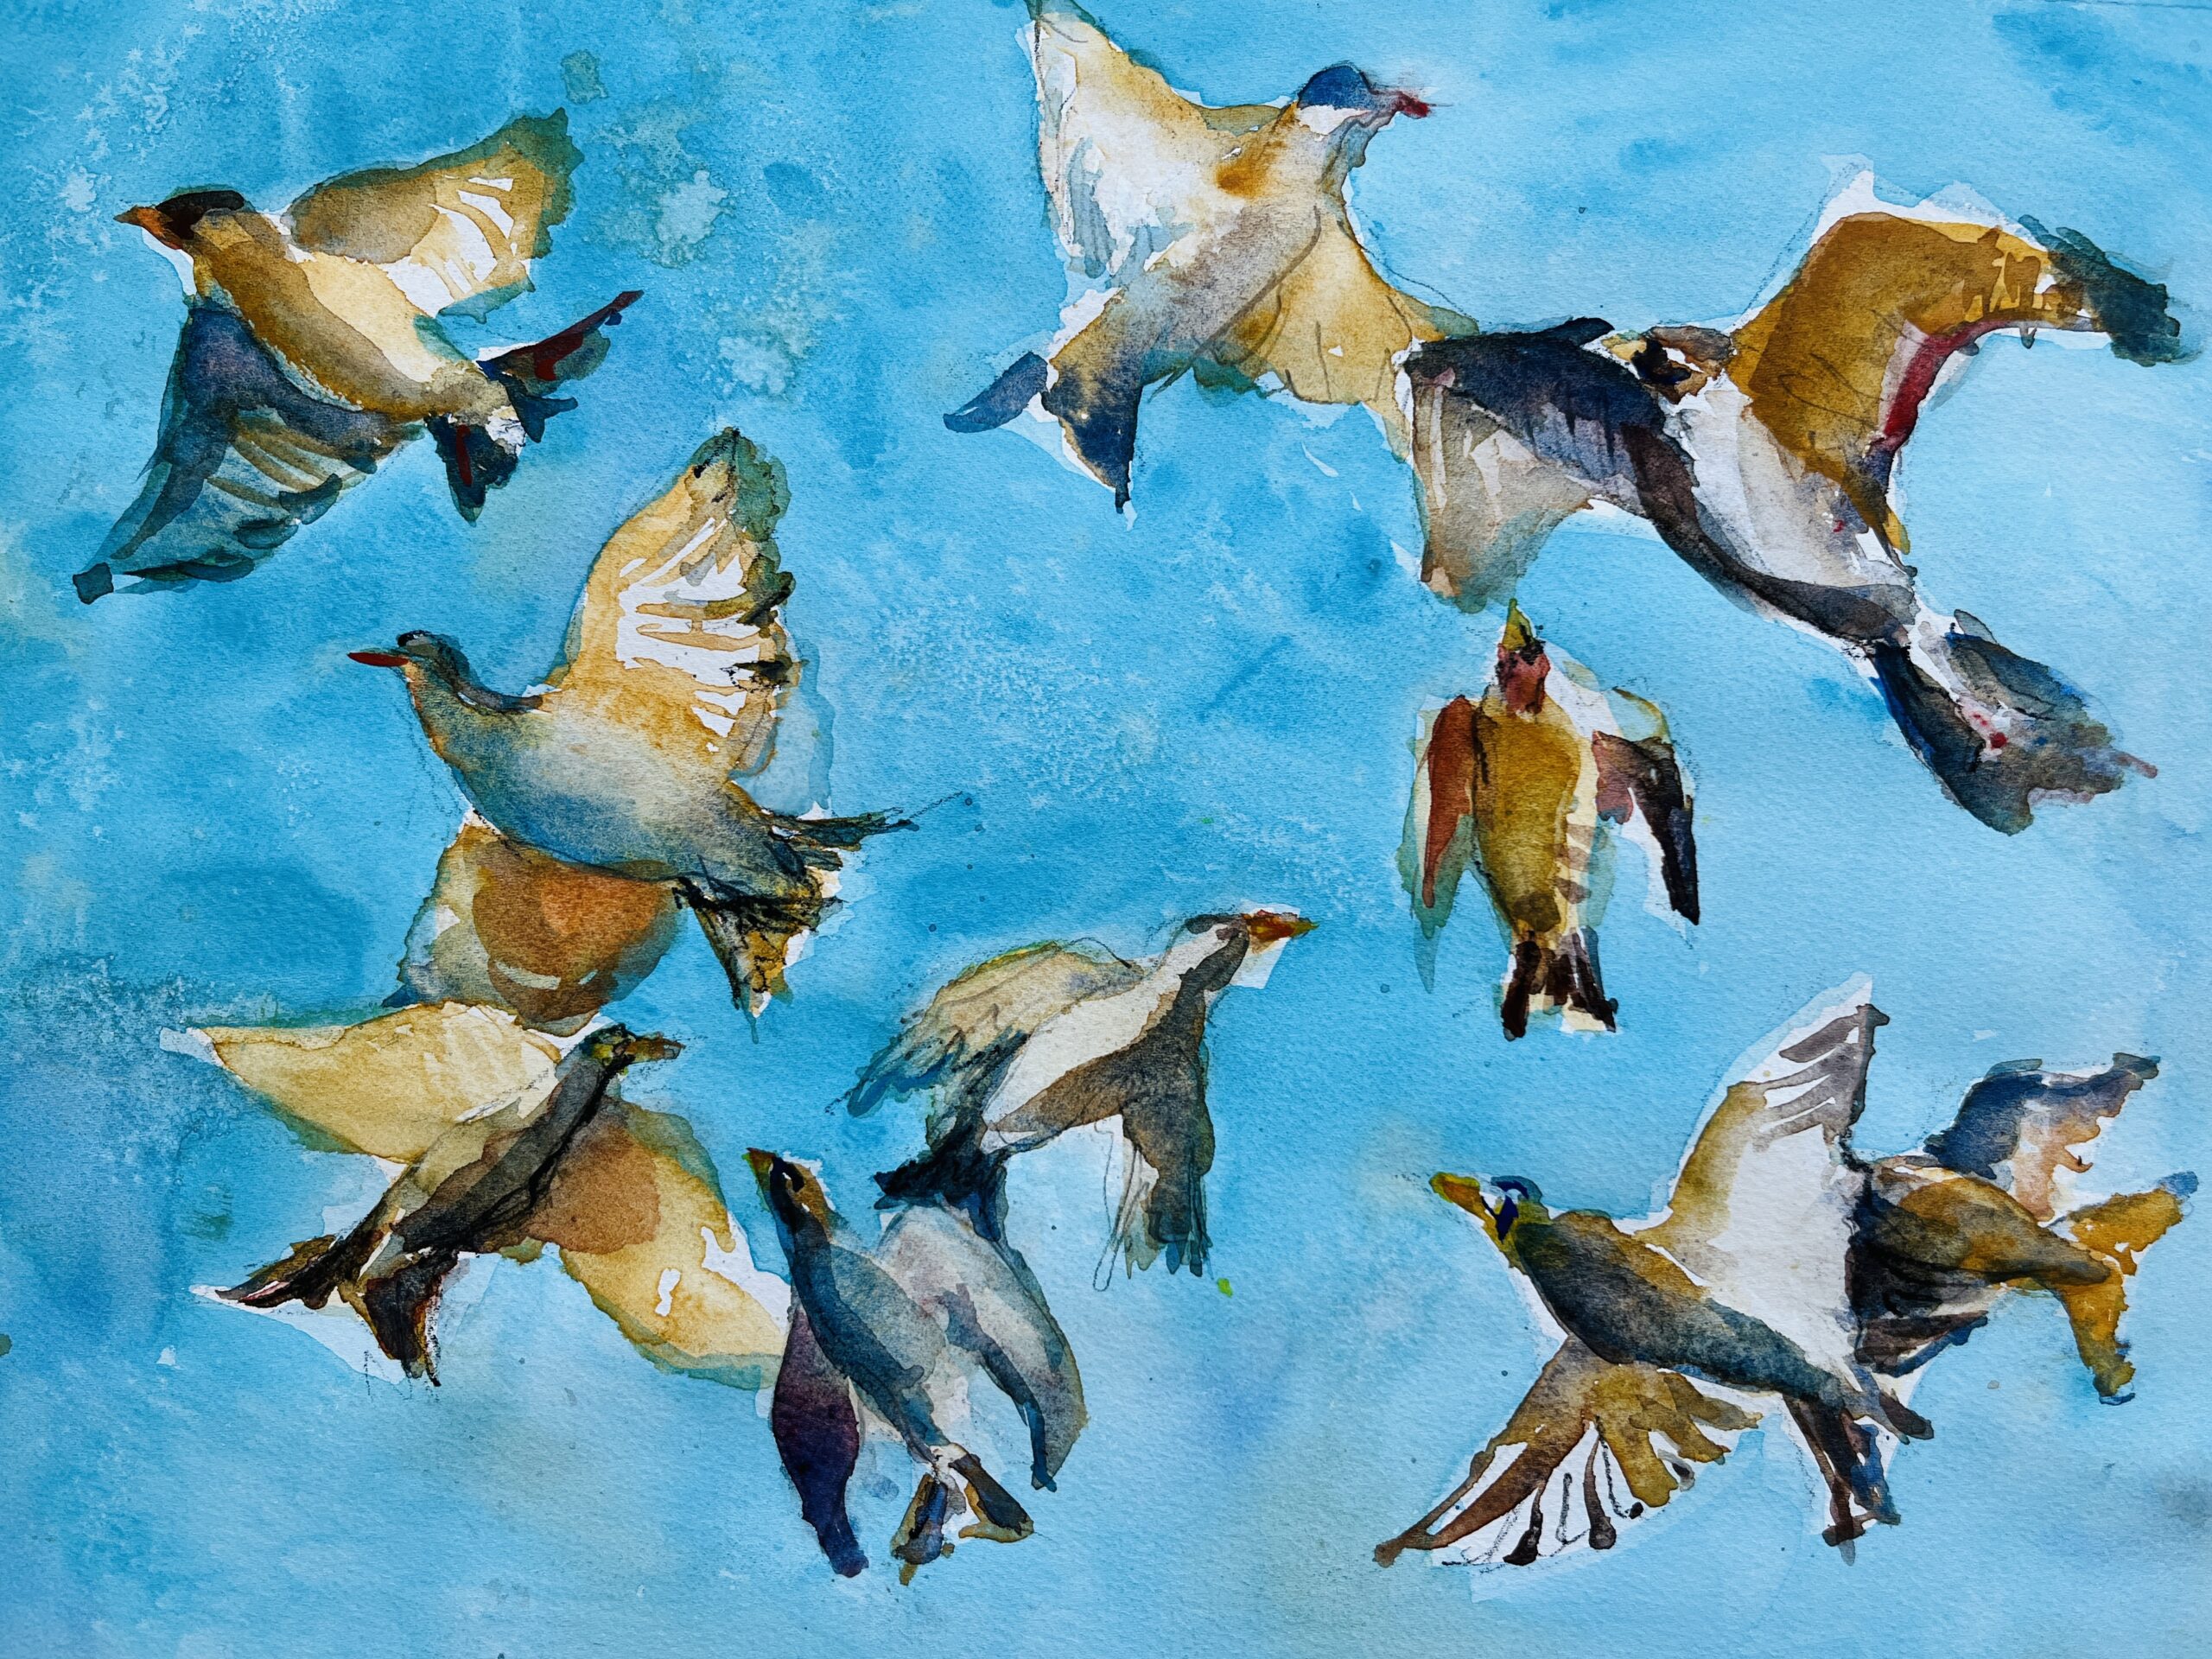 birds fly towards each other against a blue sky